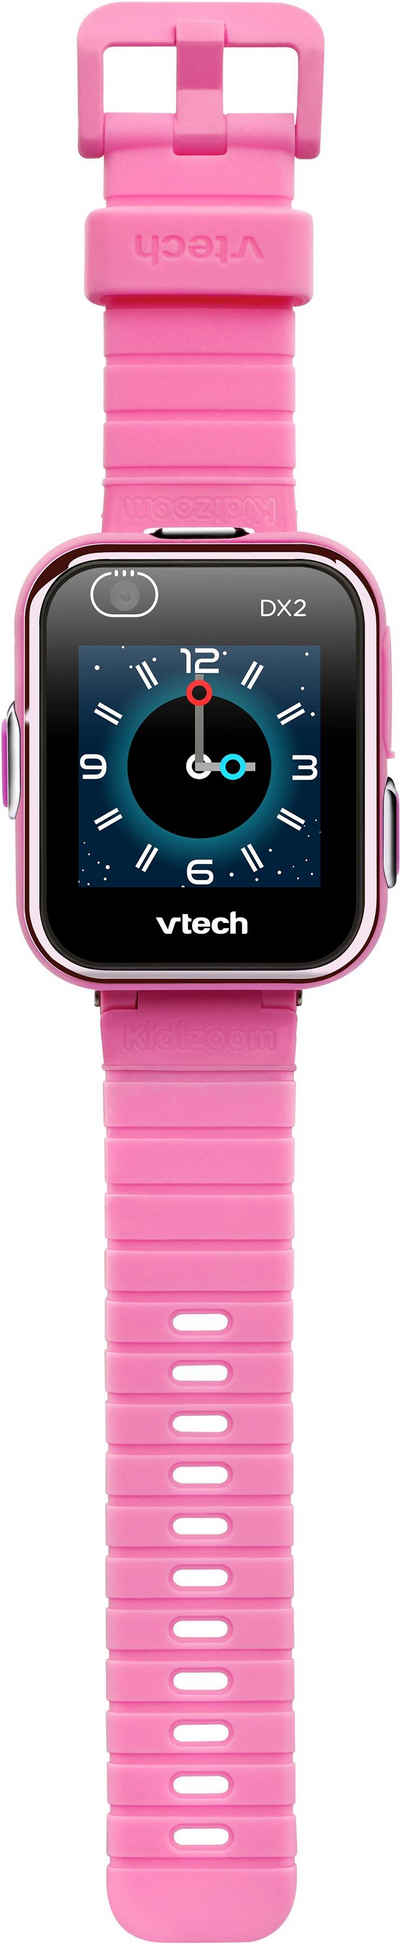 Vtech® Lernspielzeug KidiZoom Smart Watch DX2, mit Kamerafunktion